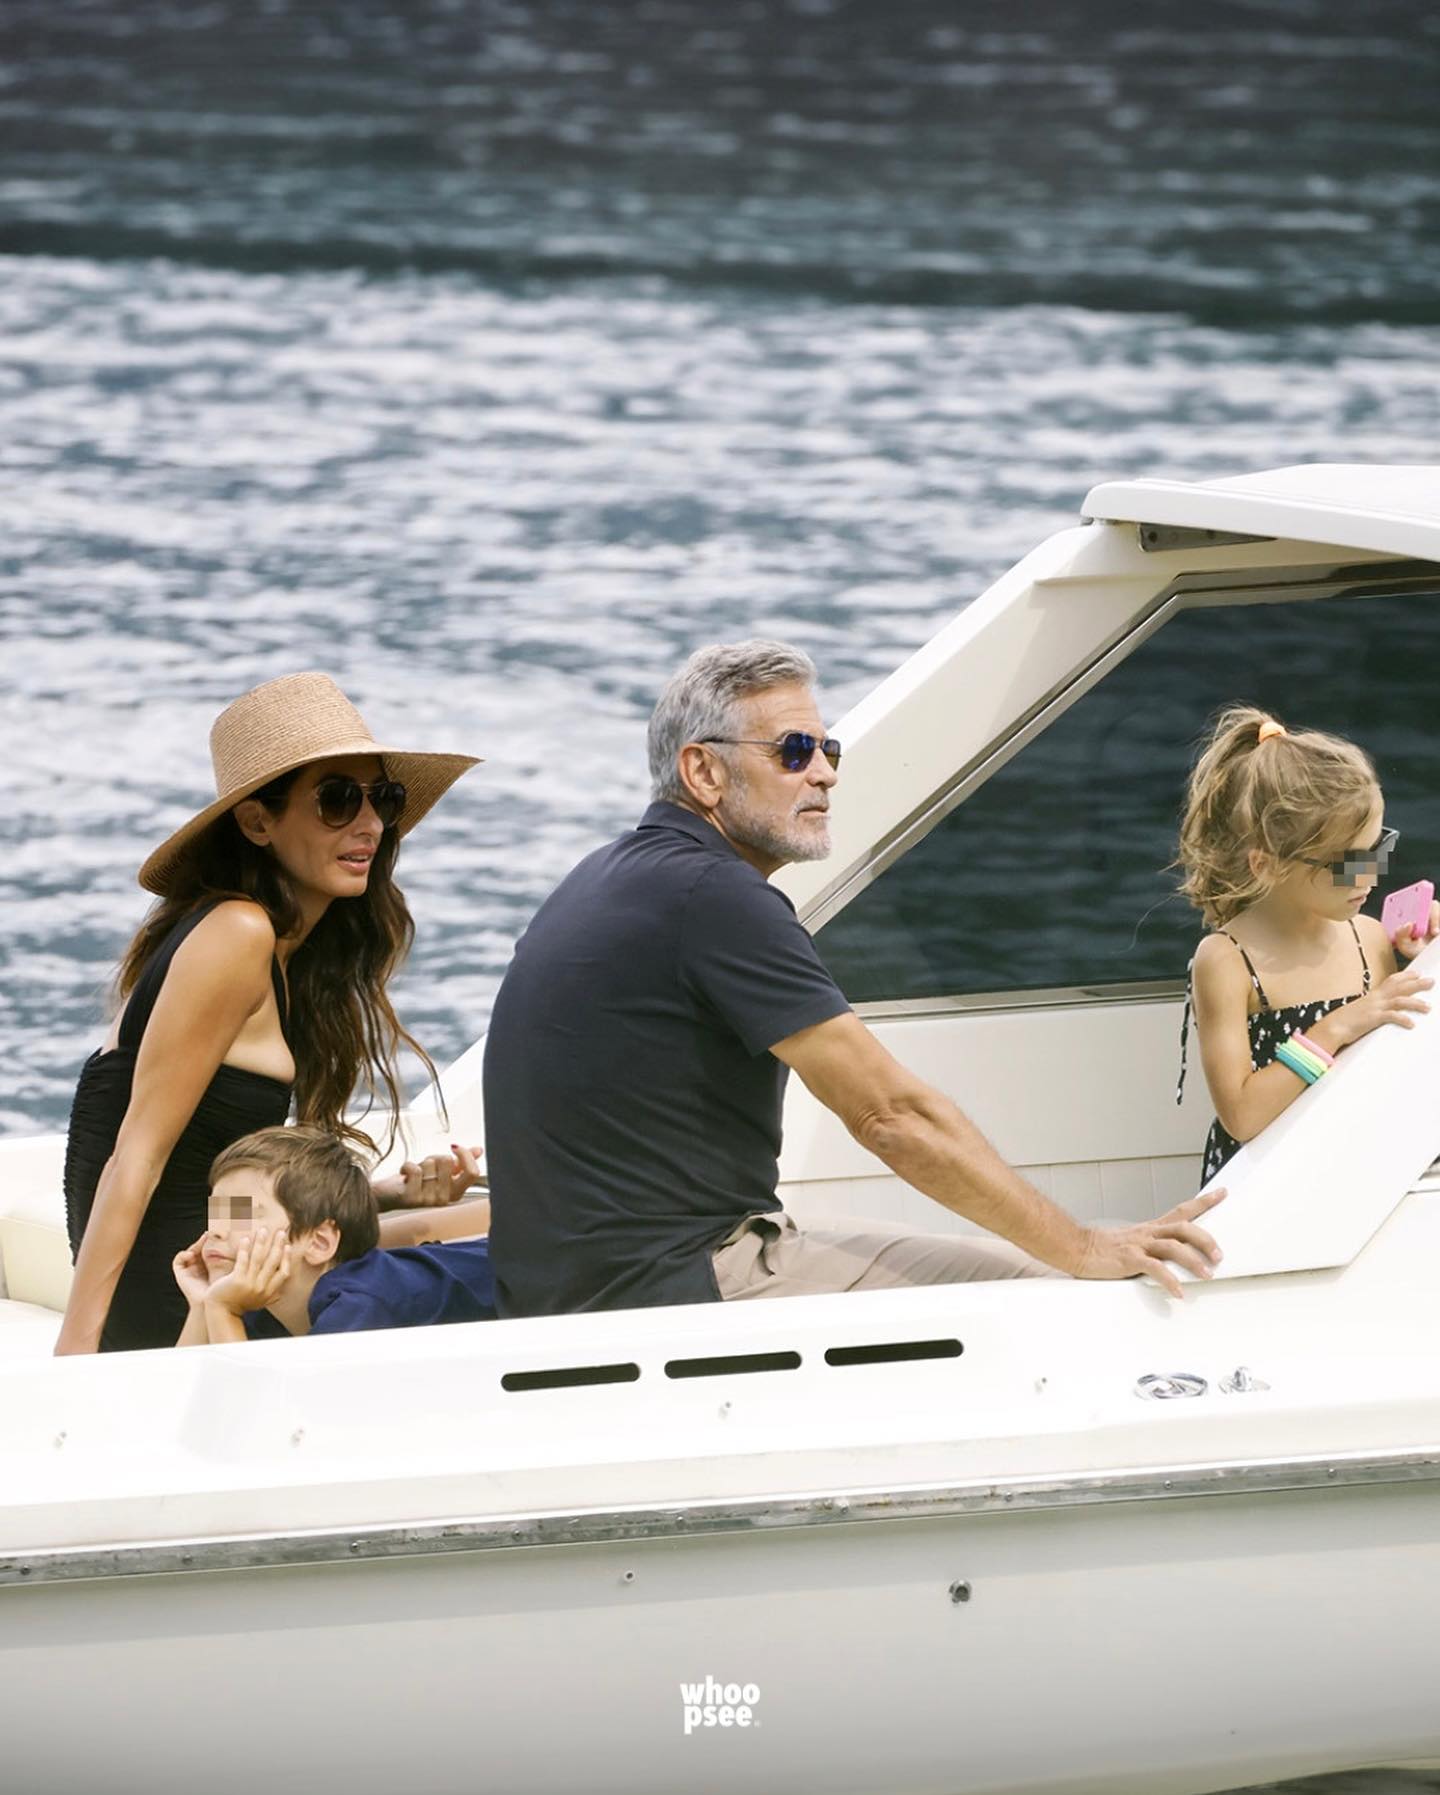 Вже зовсім дорослі: Джордж Клуні з'явився на публіці зі своїми двійнятами